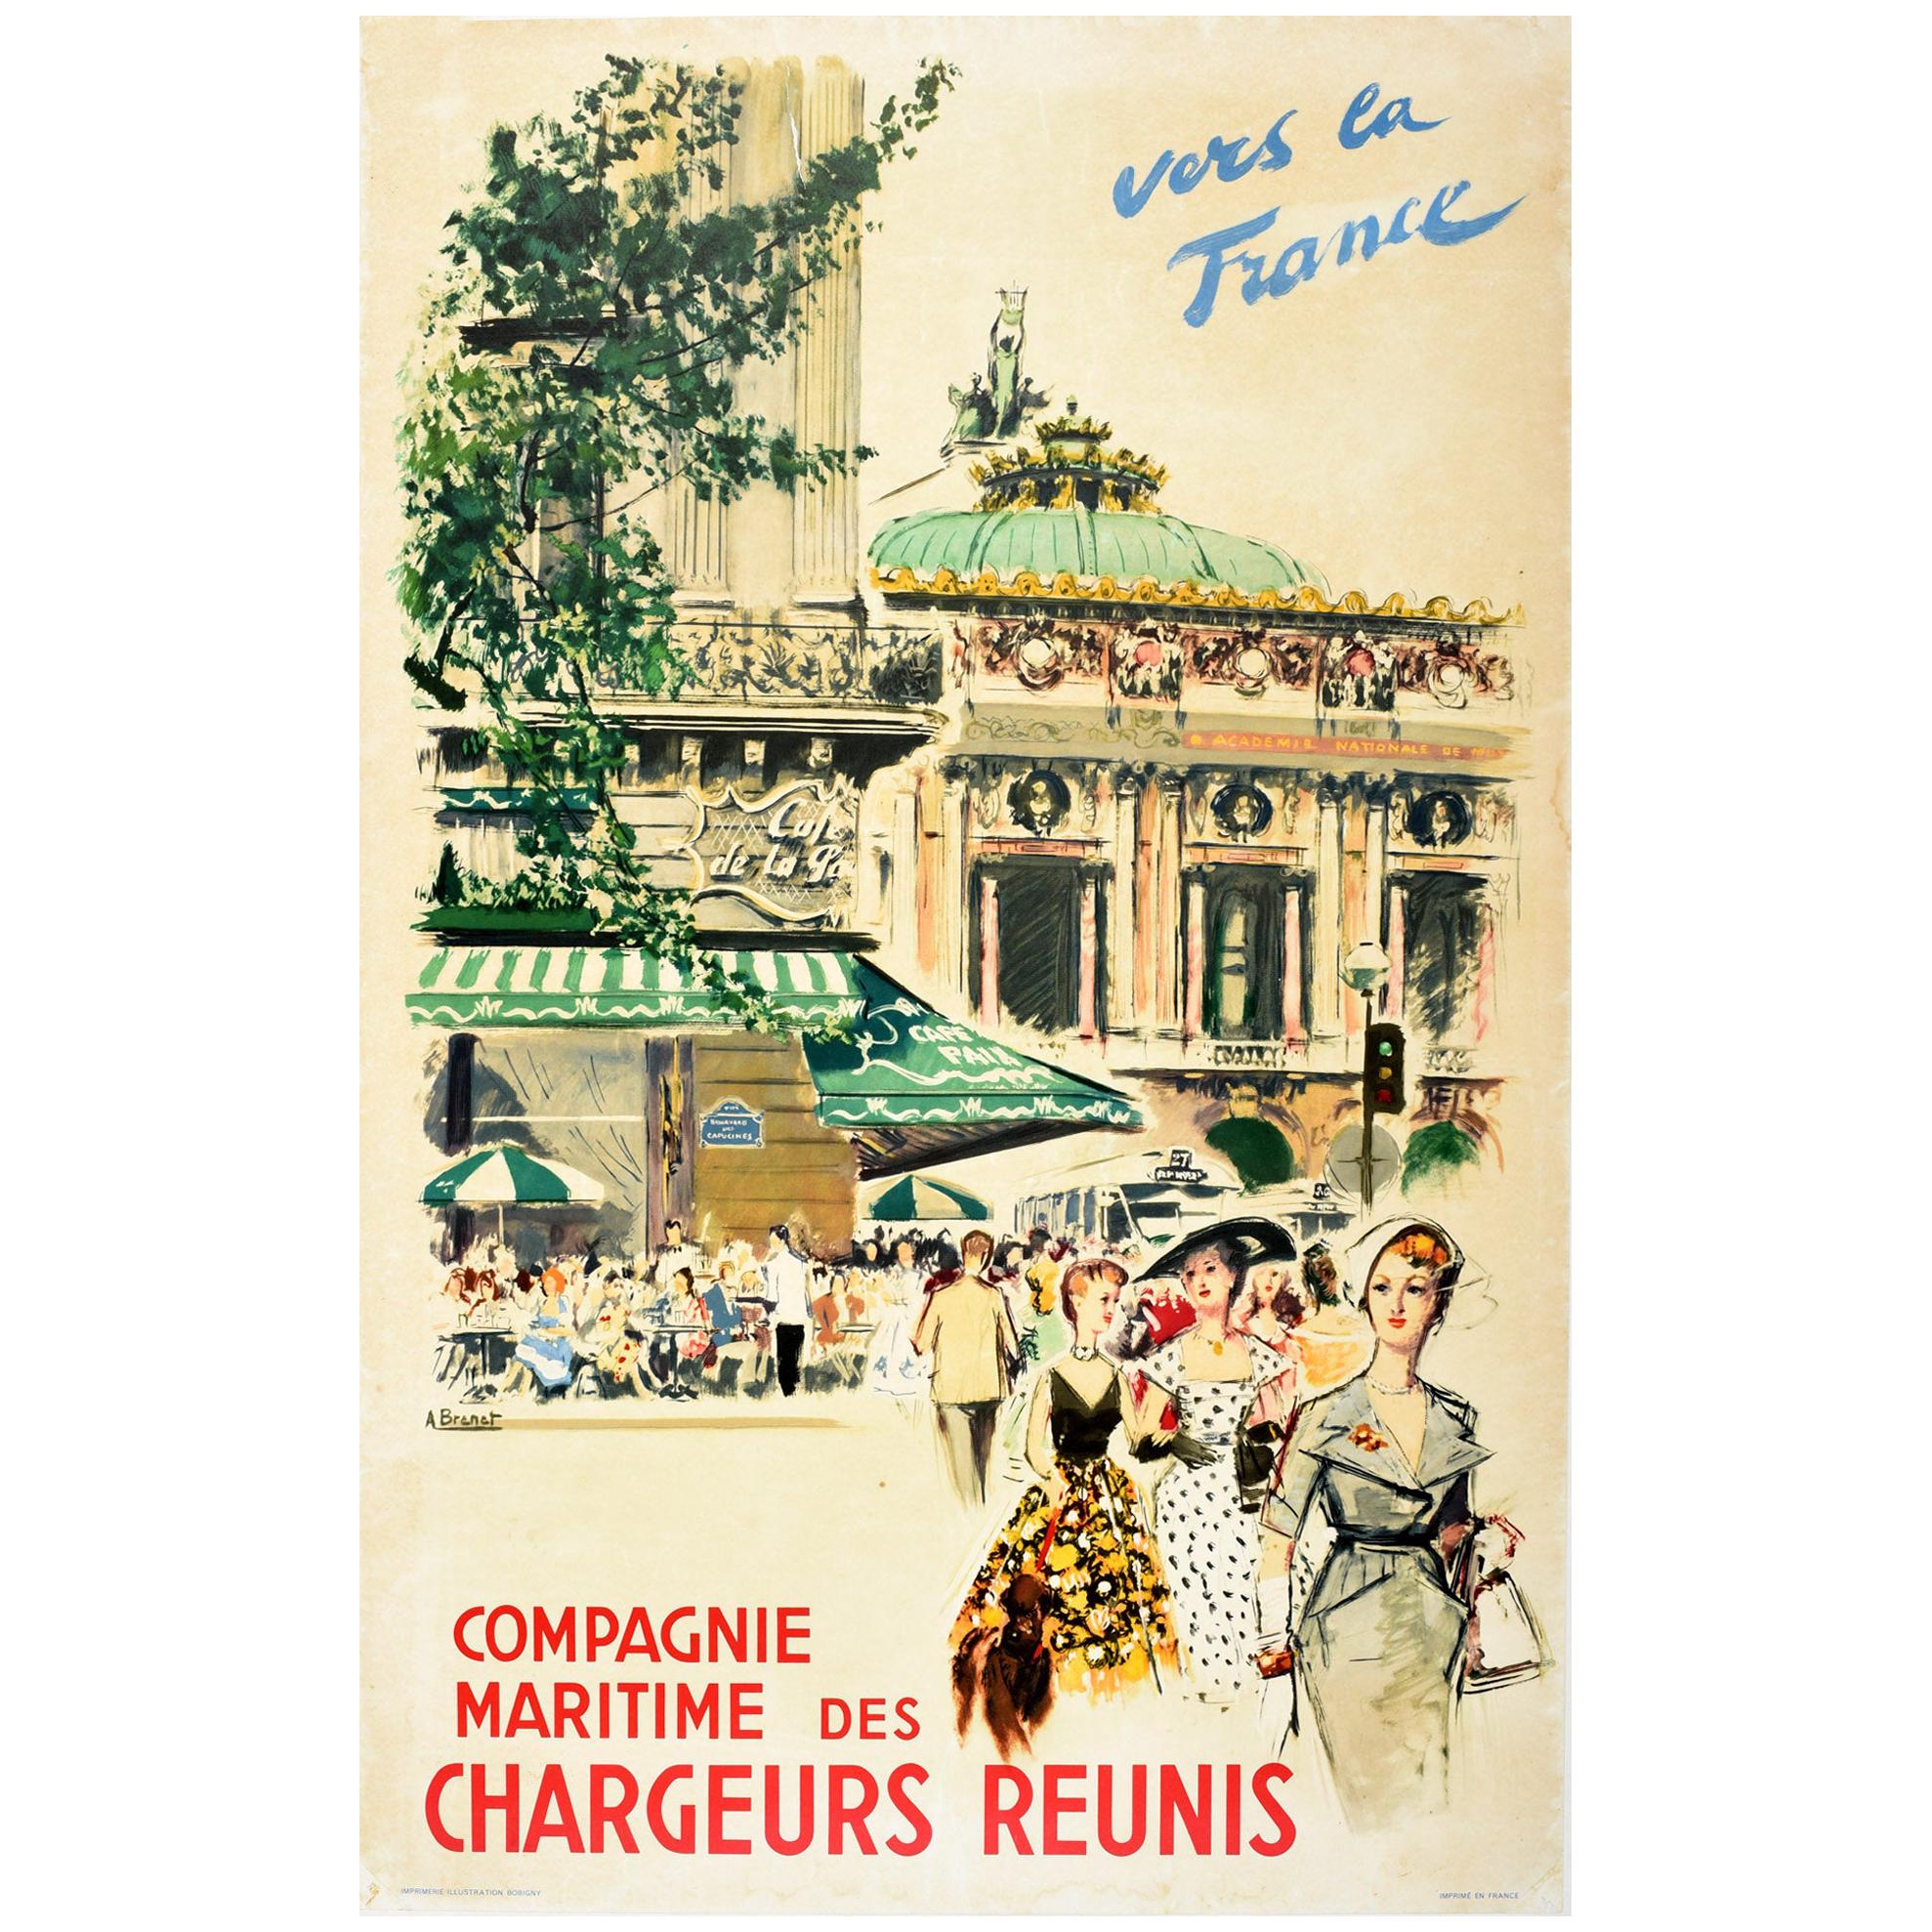 Original Vintage Poster Chargeurs Reunis Cruise Travel Paris Opera Cafe Fashion